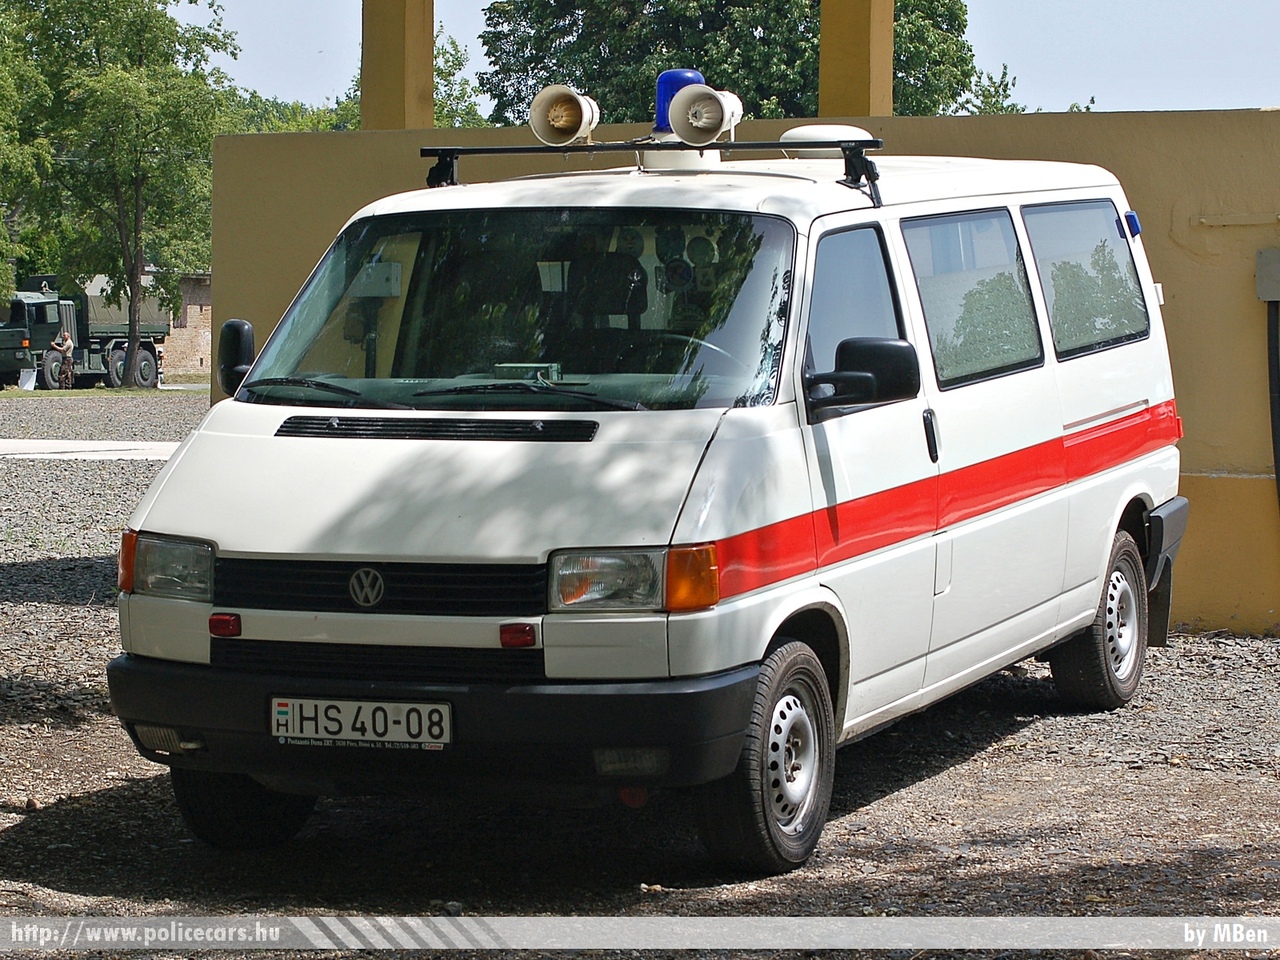 Volkswagen Transporter T4, fotó: MBen
Keywords: katonai honvédségi honvédség magyar mentő mentőautó military ambulance hungary hungarian HS40-08